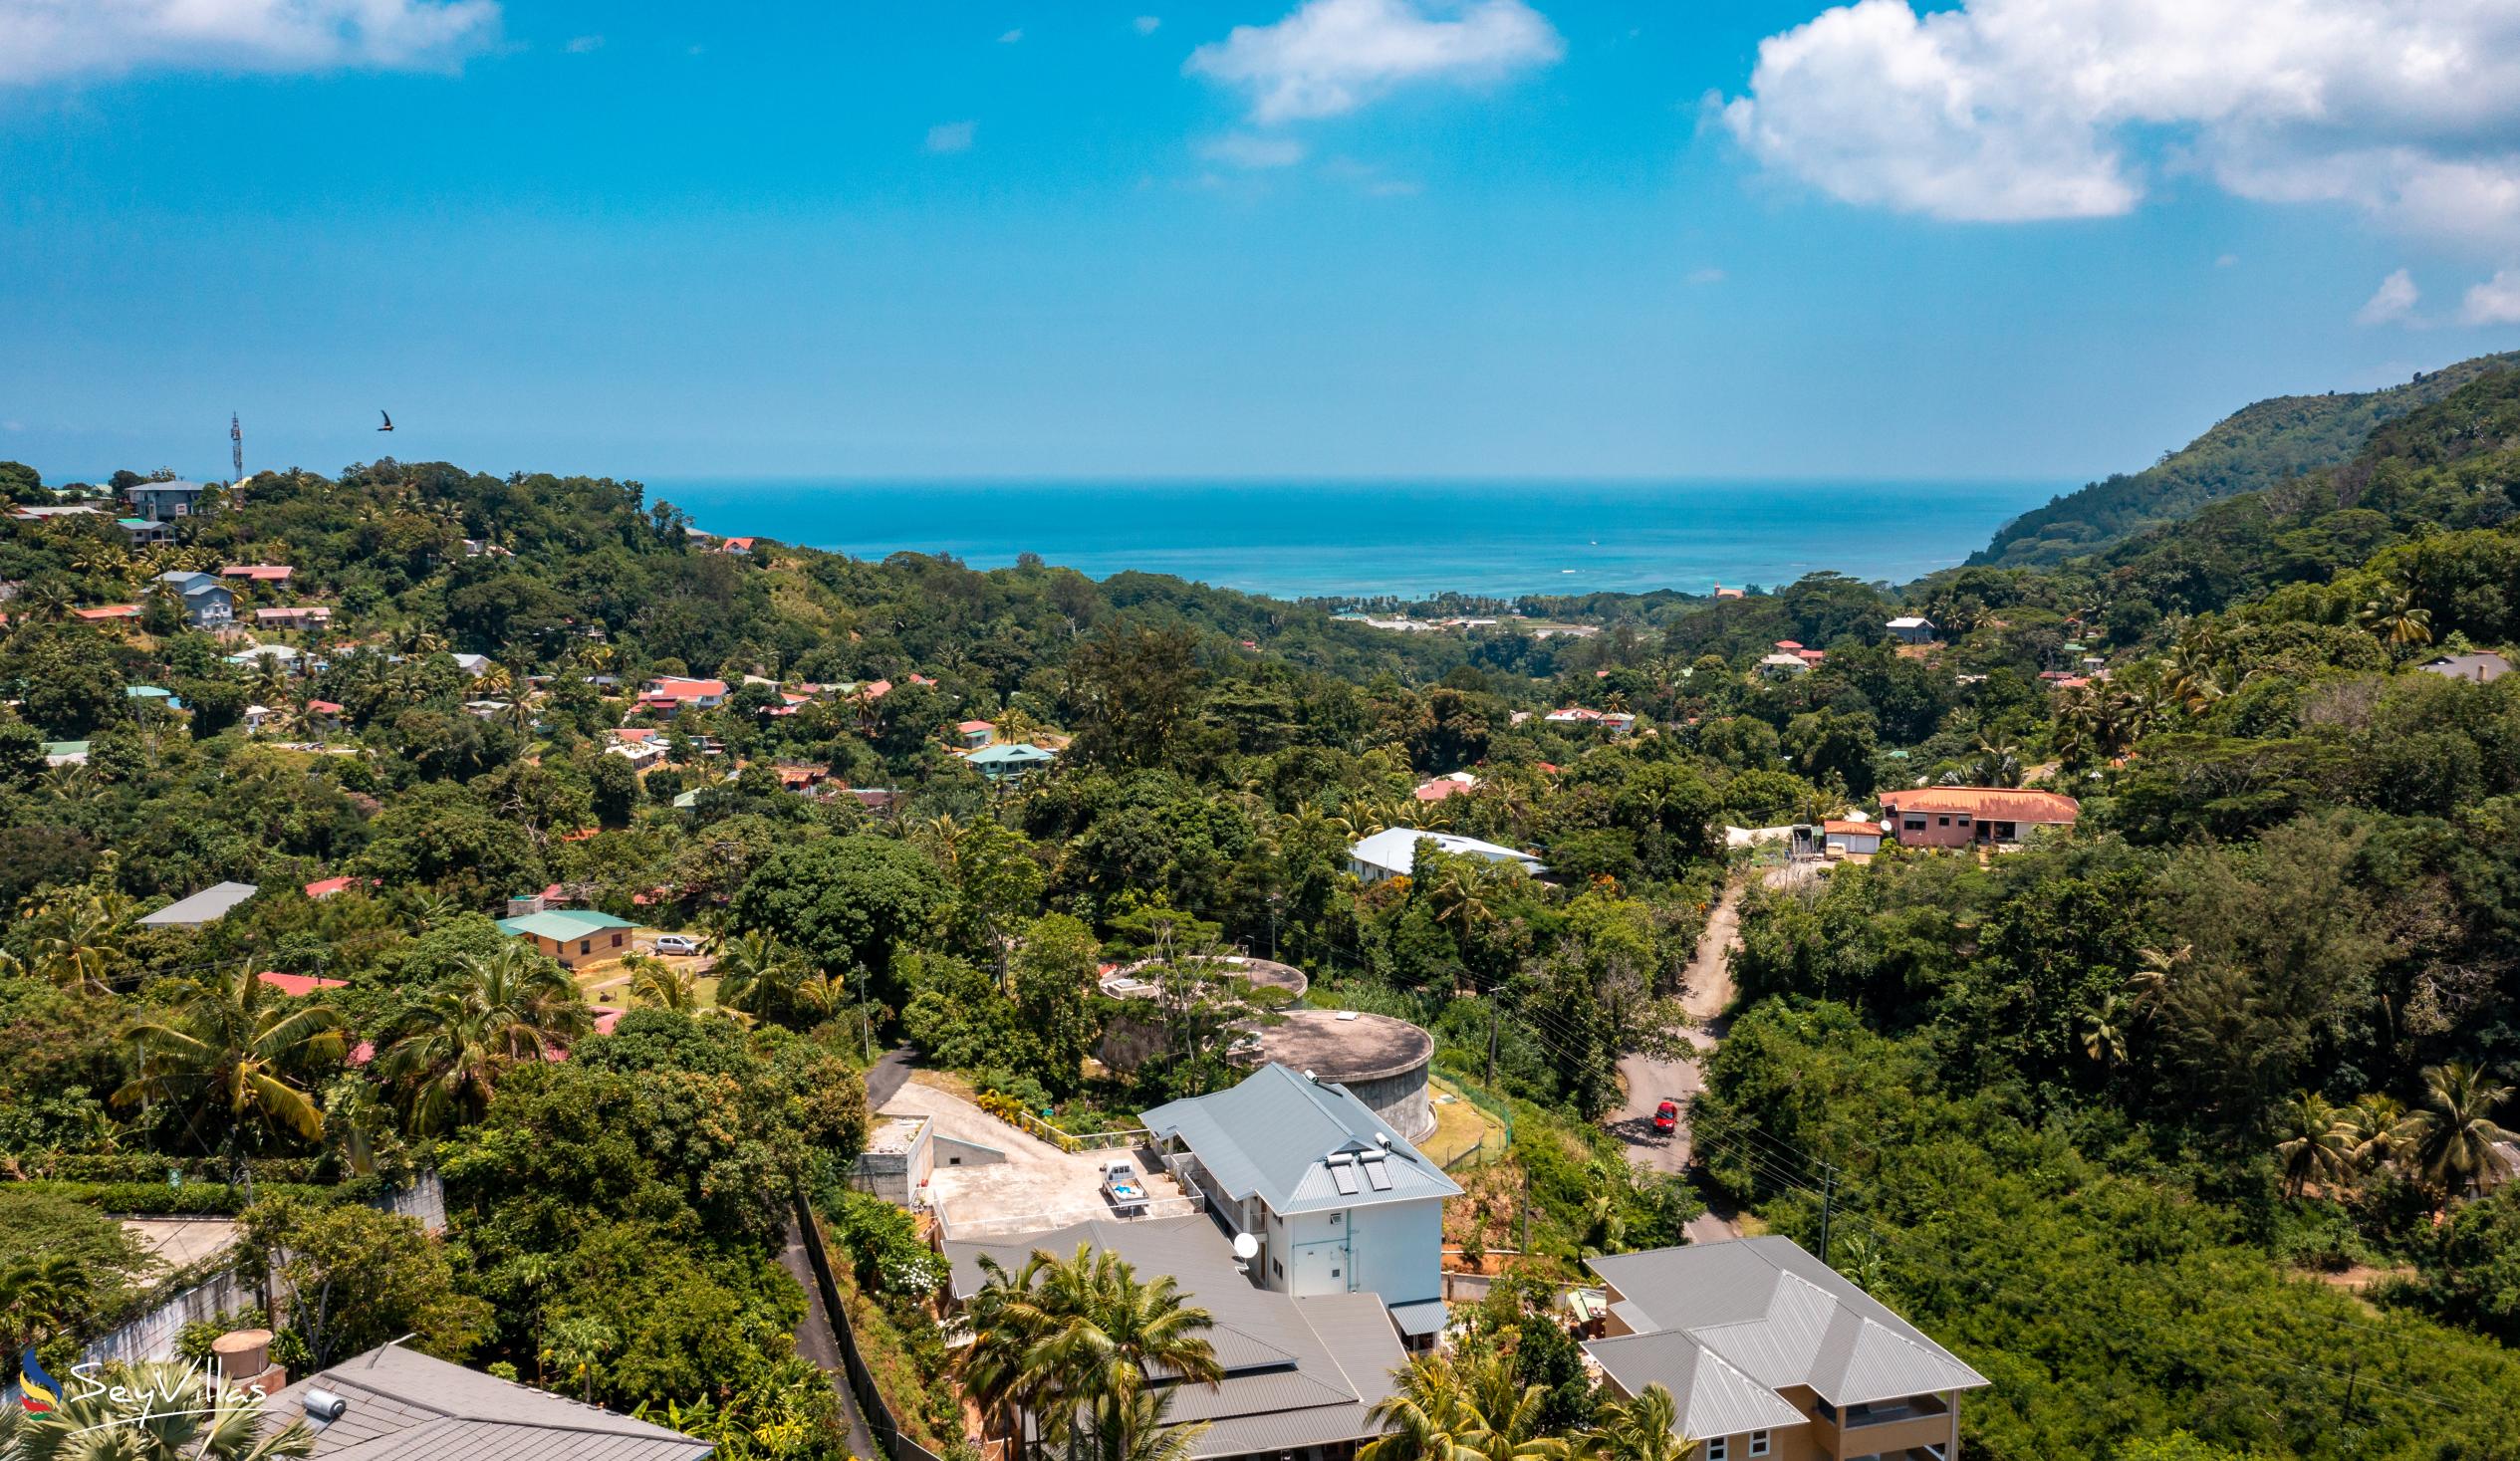 Foto 29: Residence Monte Cristo - Posizione - Mahé (Seychelles)